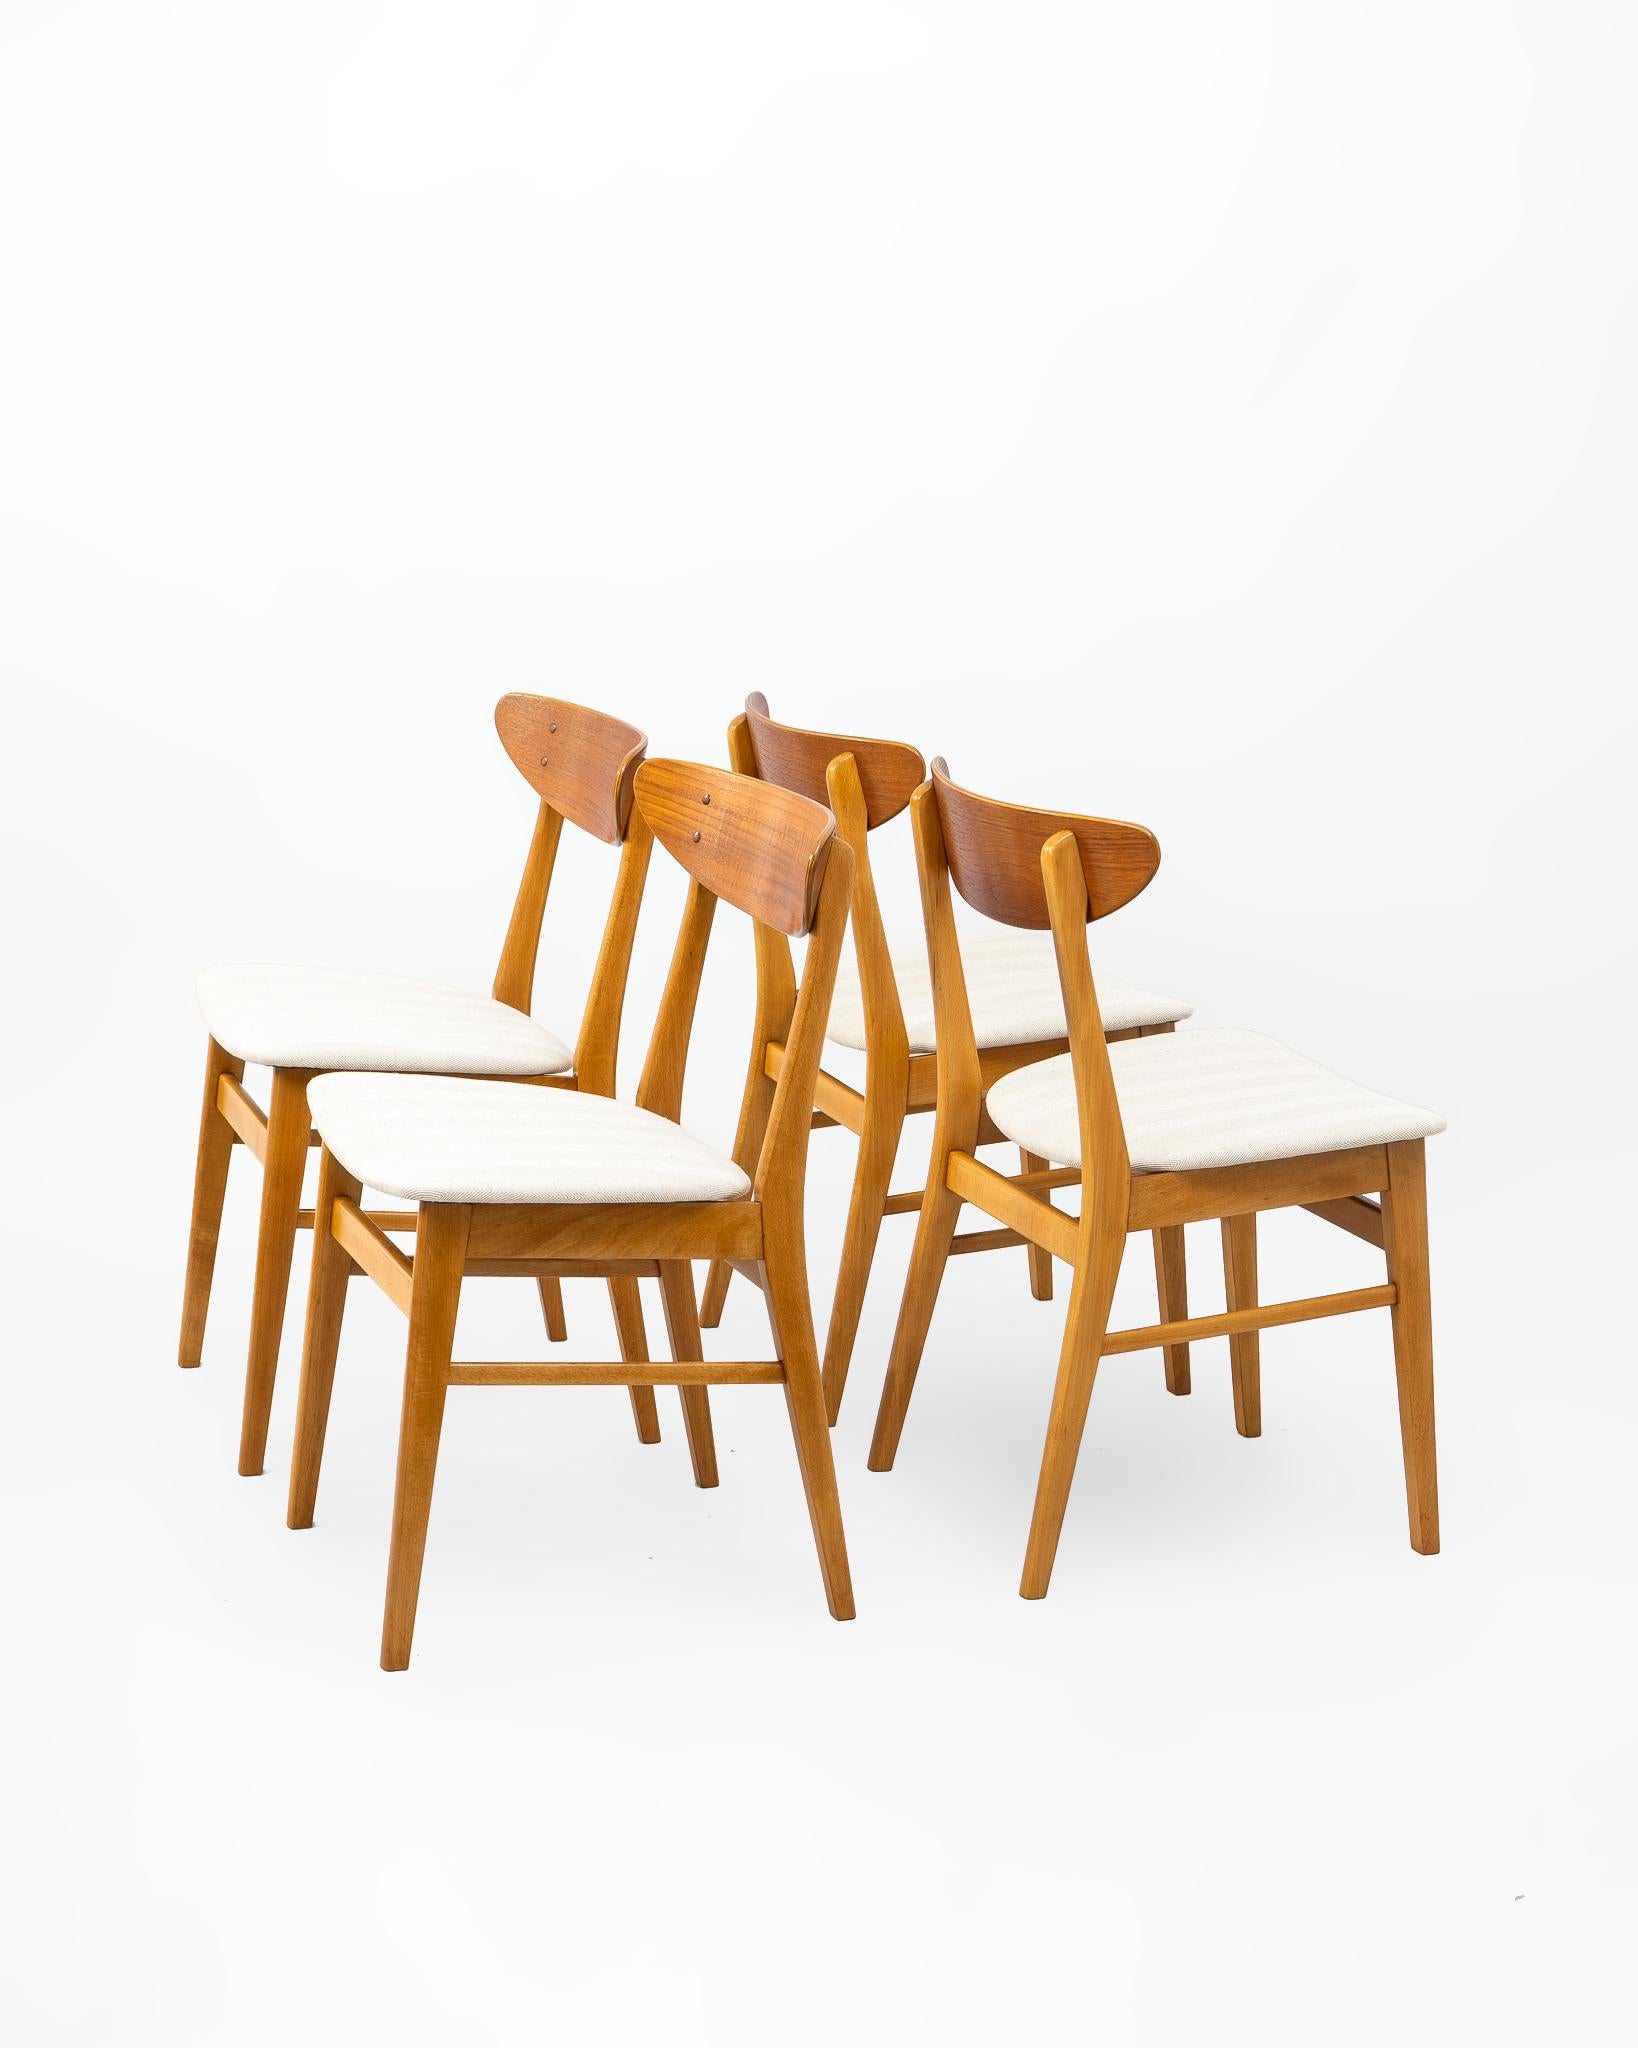 Conjunto de cuatro sillas fabricadas por la firma danesa Farstrup Stolefabrik en la década de los 1960's. Struktur aus Haya-Maciza-Material mit einem eleganten und ergonómischen Resonanzkörper in Form eines Bumerangs aus Teakholz. Diseño Mid Century